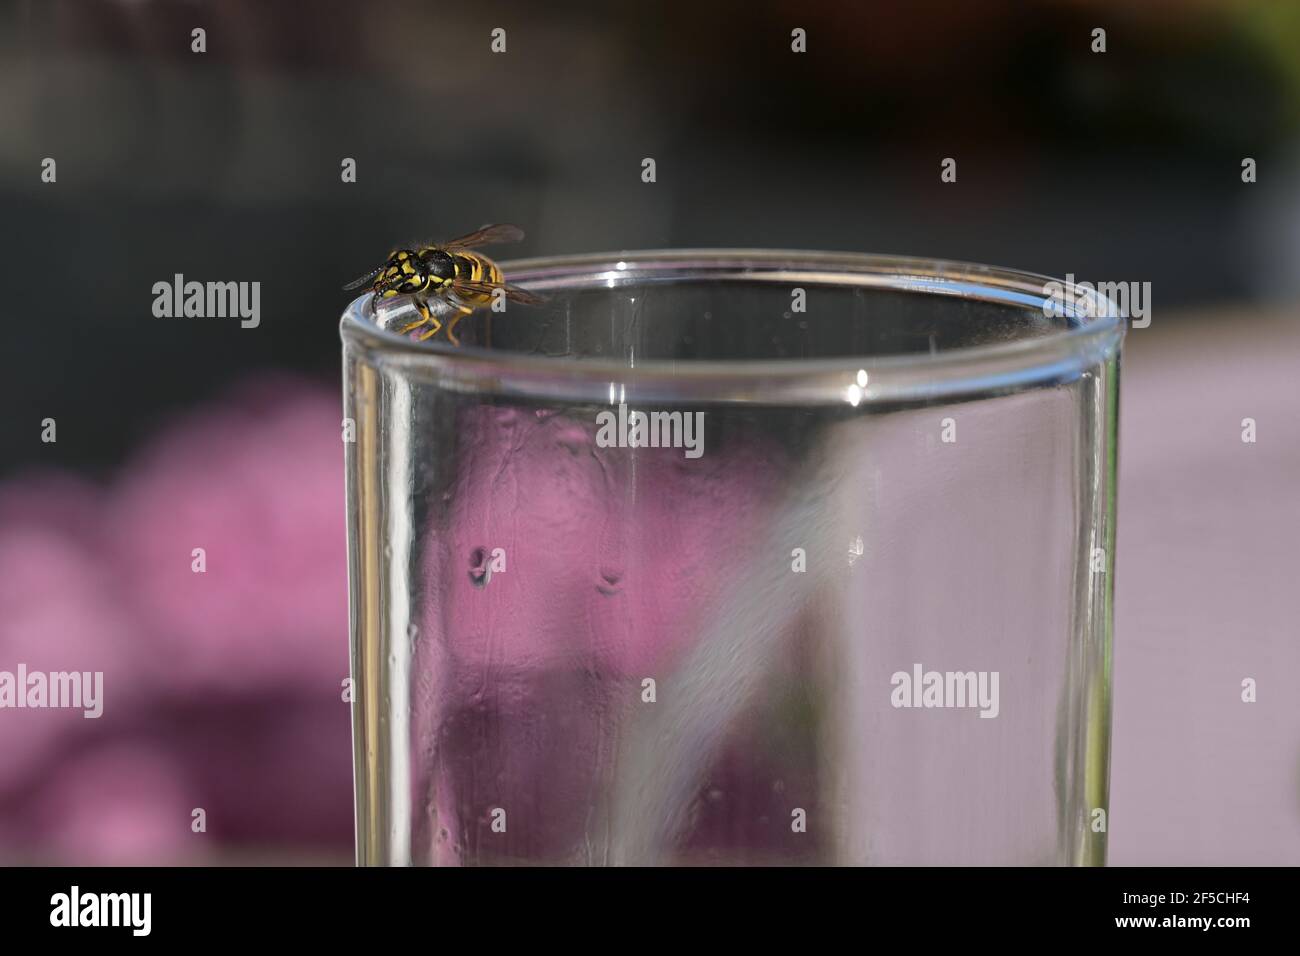 Wespe am Rand eines Trinkglases, lästige Insekten beim Essen im Freien, für Allergiker gefährlich, Kopierraum, ausgewählter Fokus, enge Tiefe Stockfoto